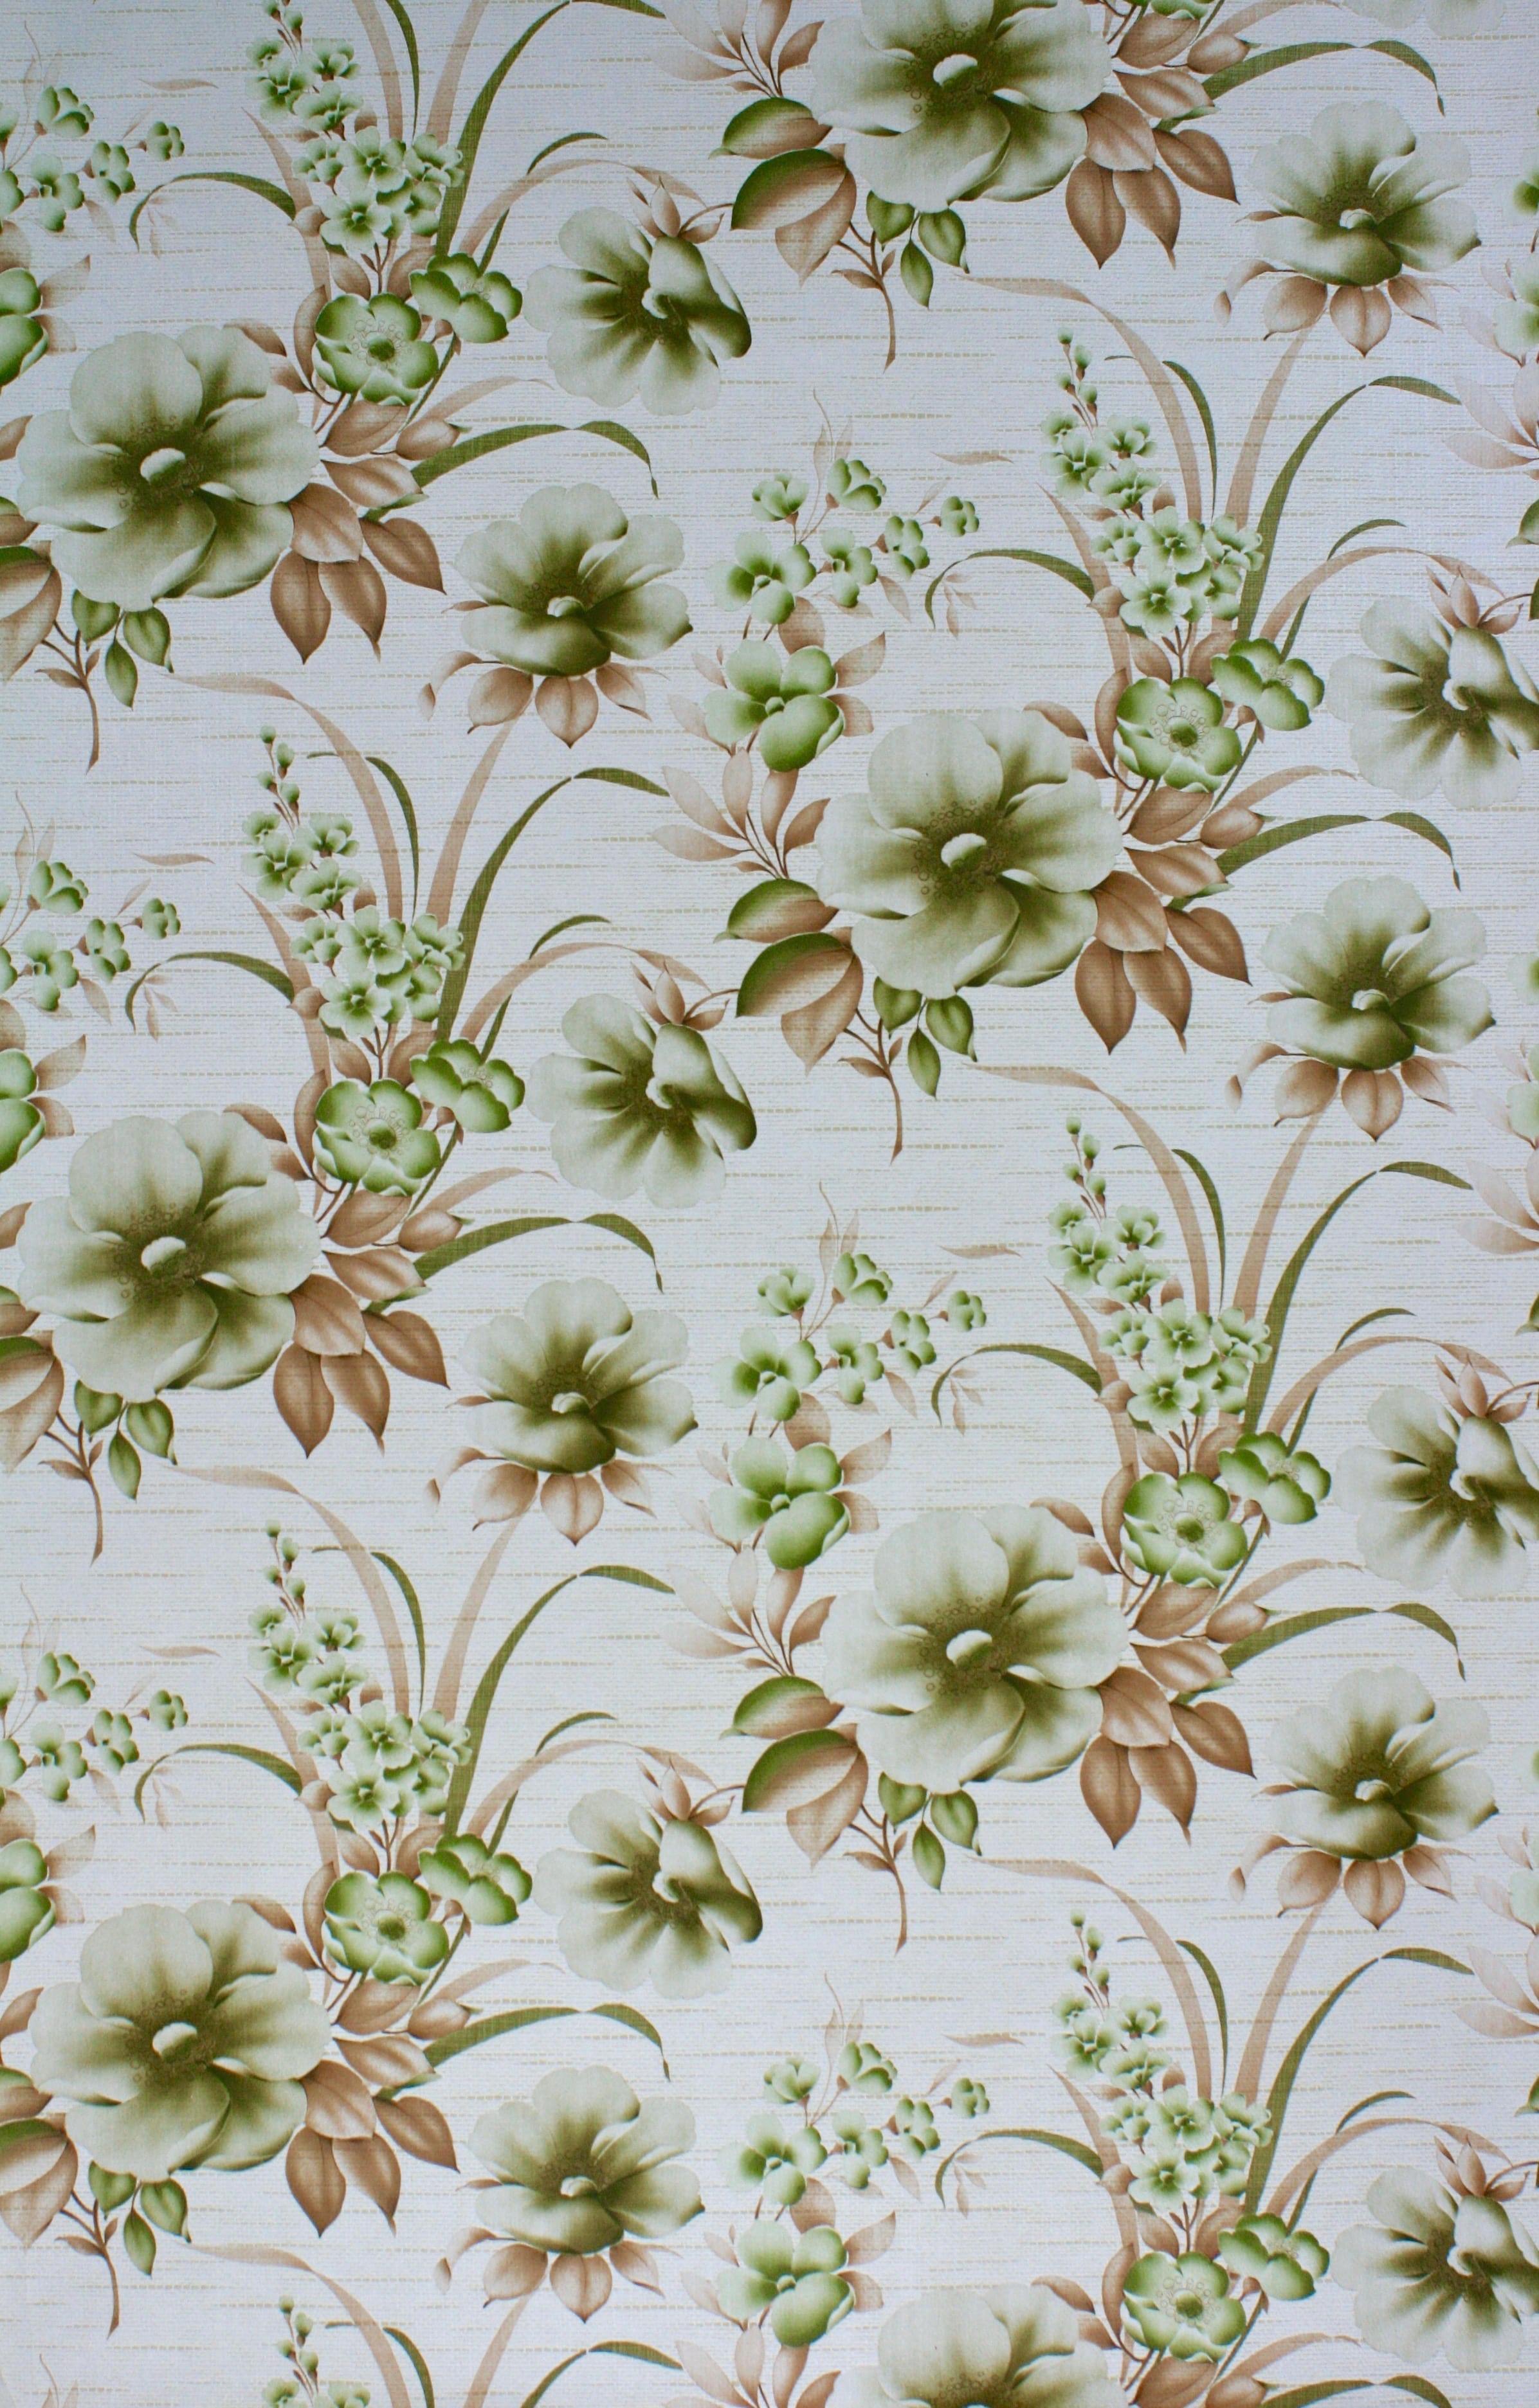 green vintage wallpaper,wallpaper,plant,flower,floral design,pattern